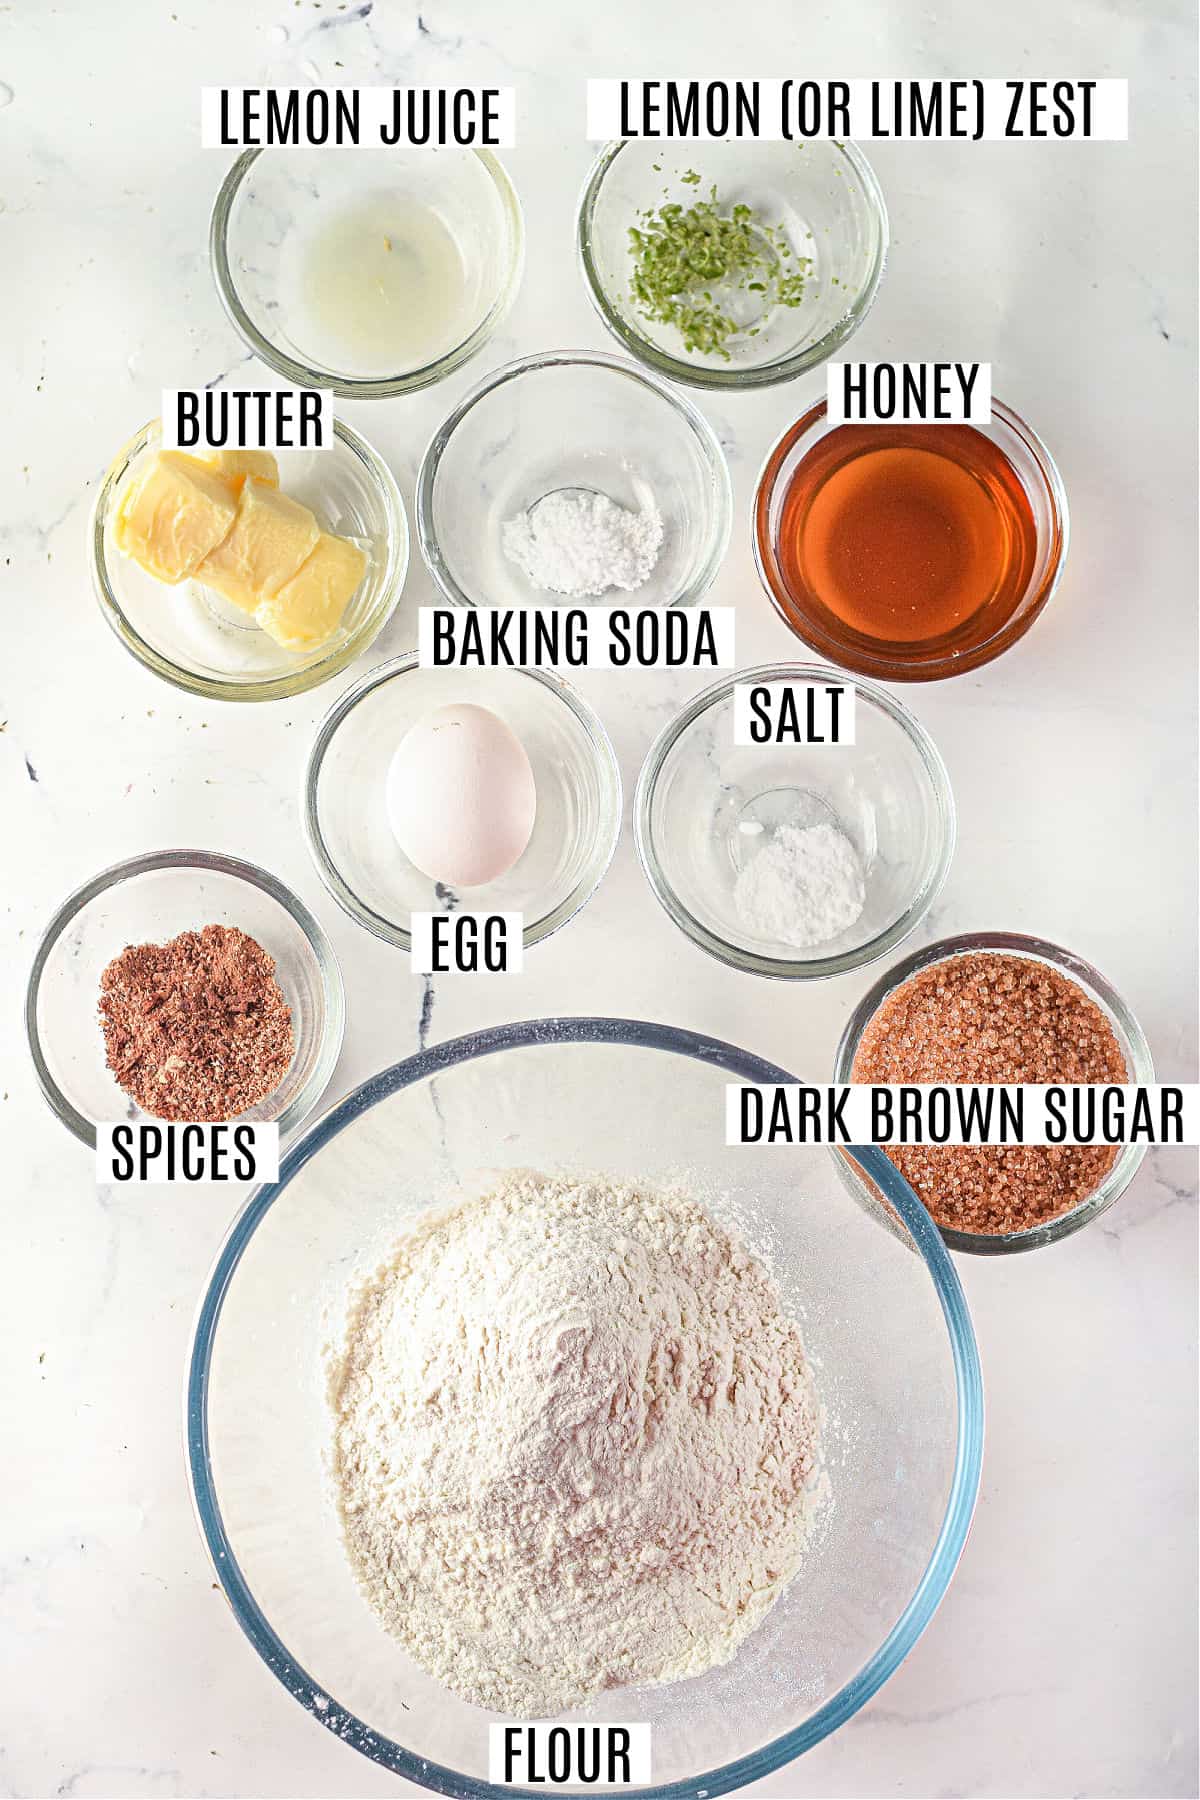 Ingredienti necessari per fare i biscotti lebkuchen.